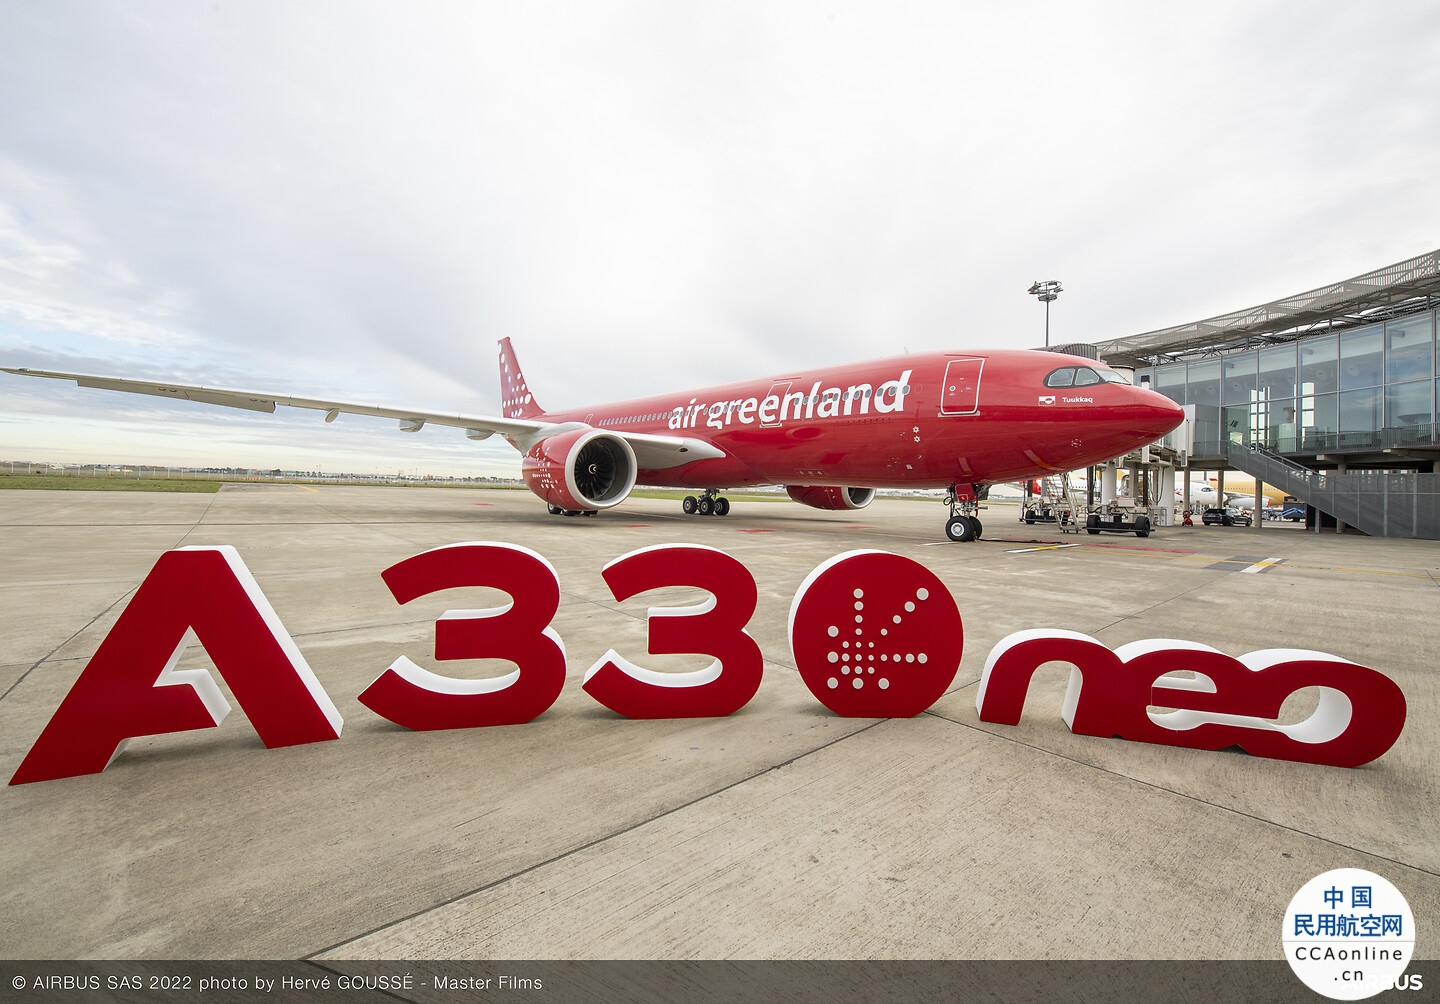 格陵兰航空成为空客A330neo全新运营商